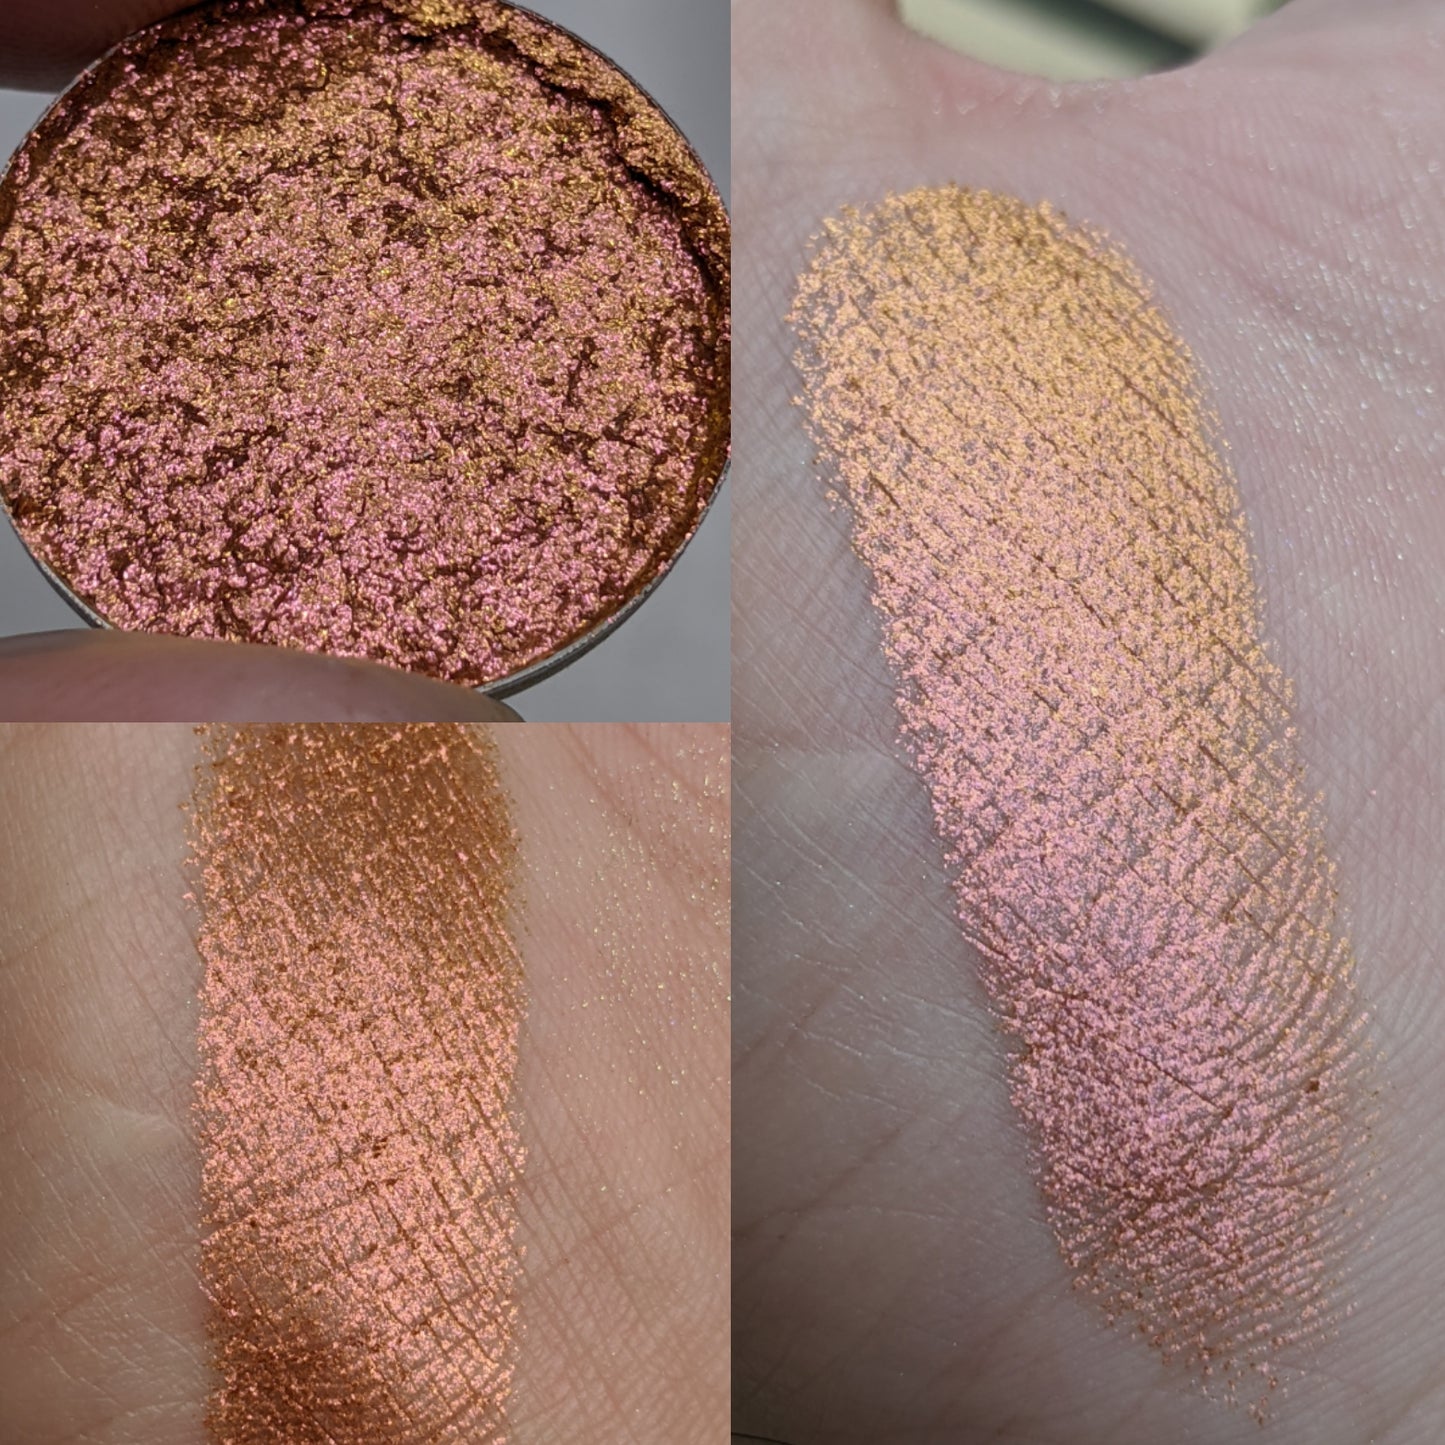 Boethiah - Eyeshadow Multichrome fiery Copper Red Peach Gold